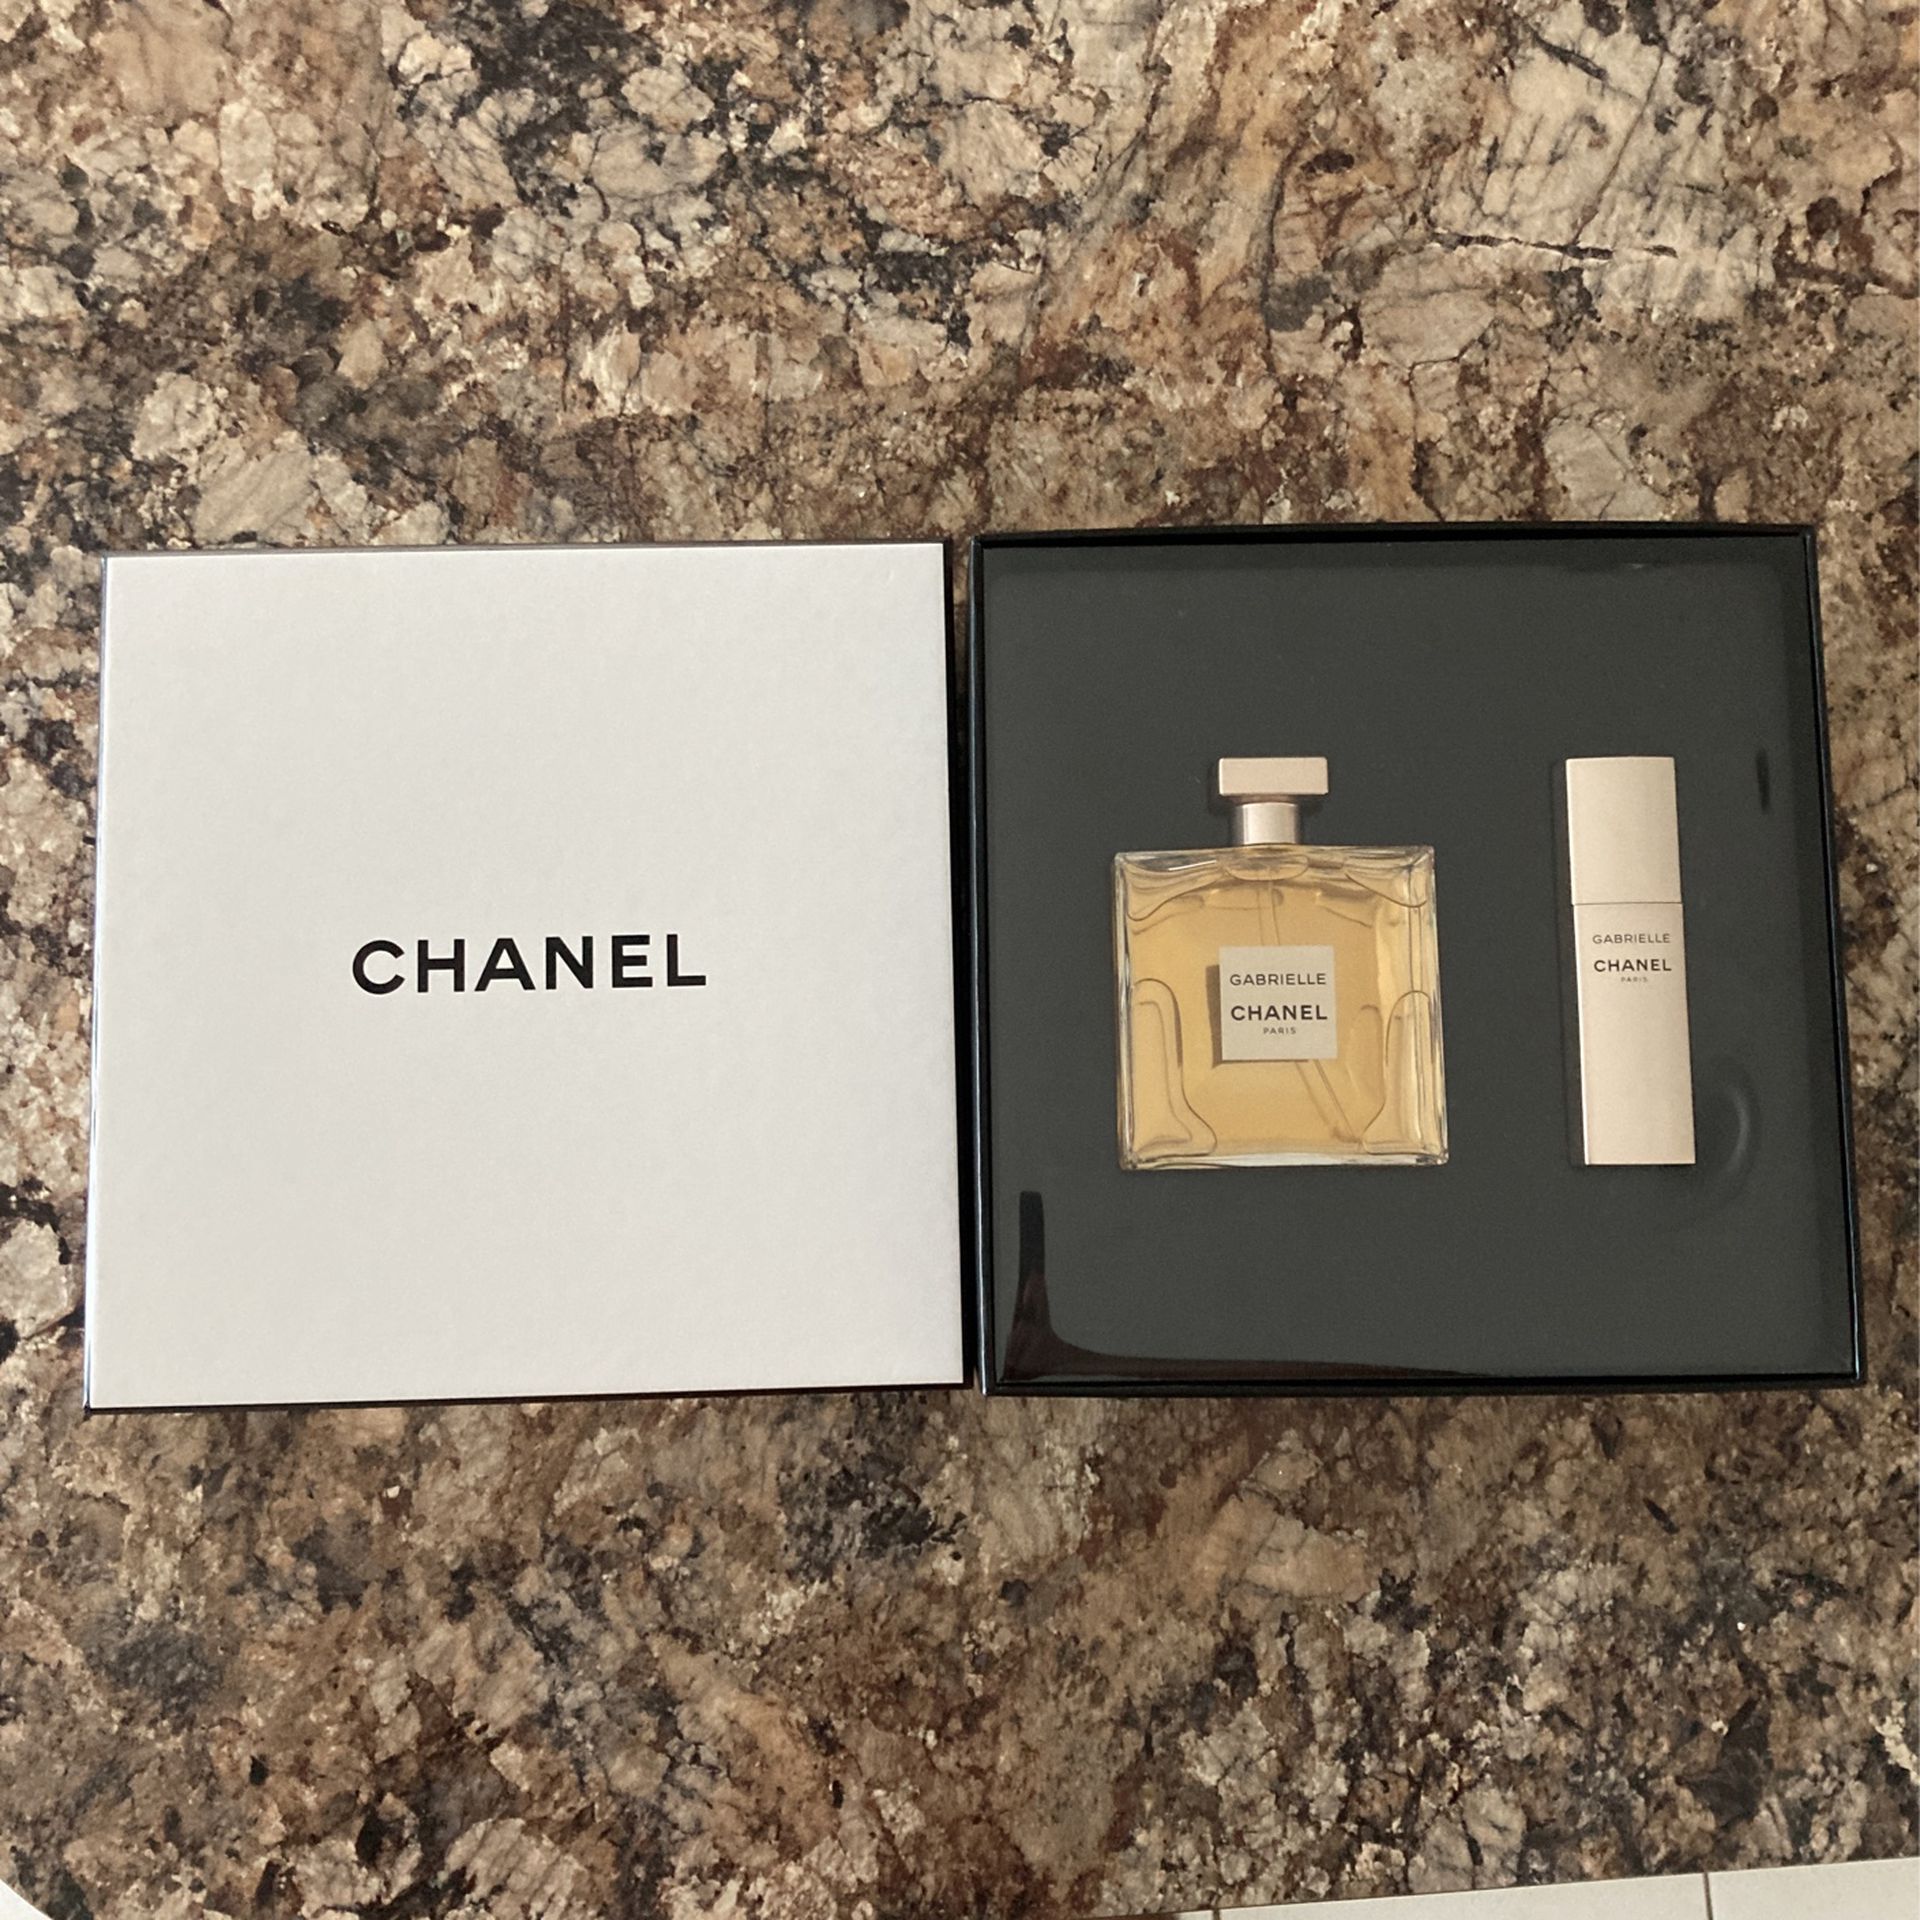 Chanel Gabrielle Parfum for Sale in Miami Beach, FL - OfferUp